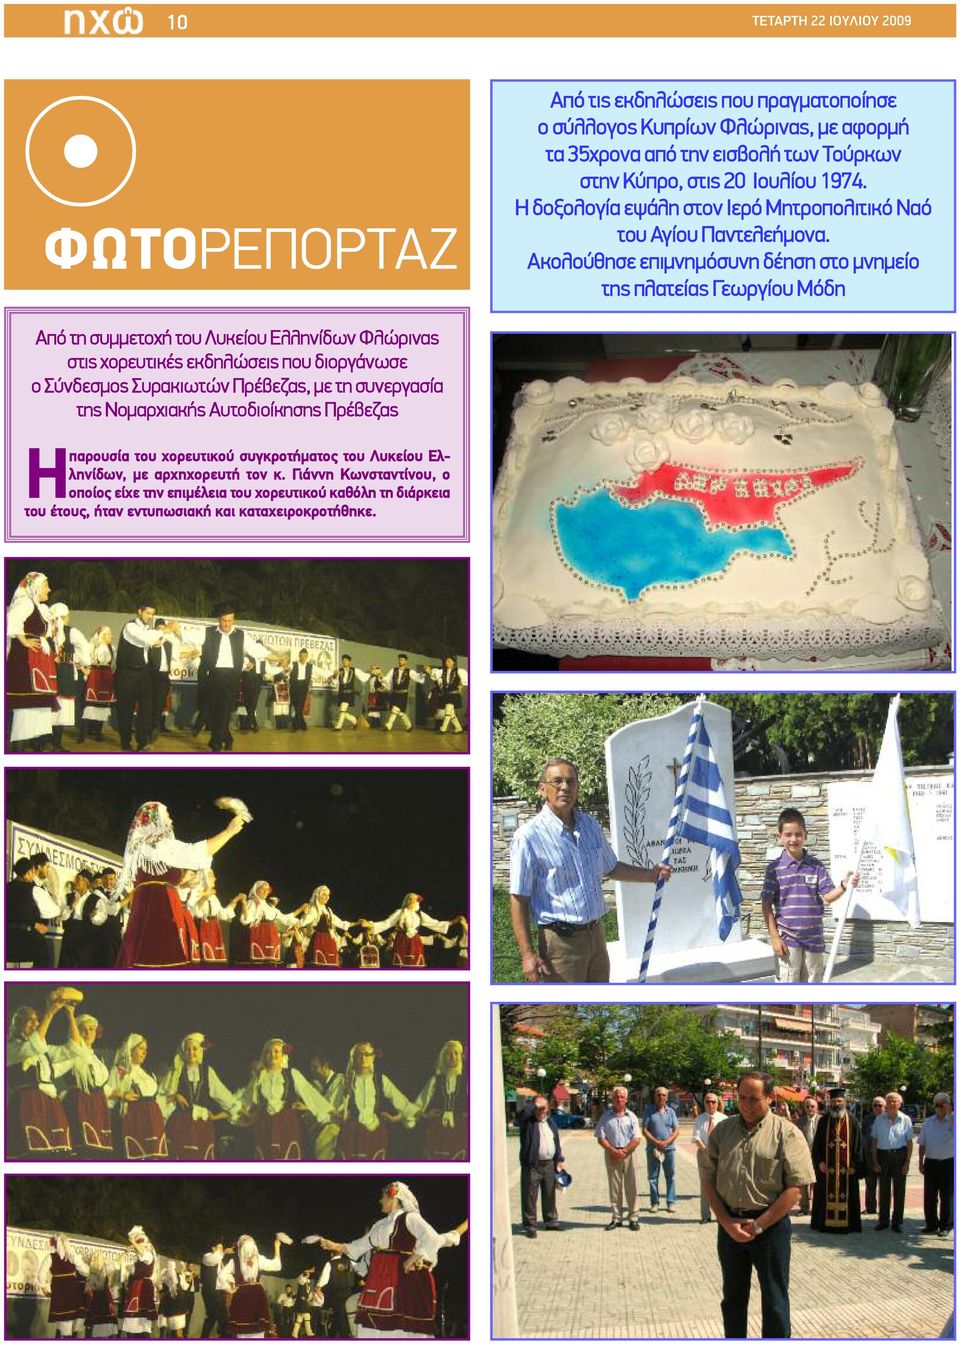 Aκολούθησε επιμνημόσυνη δέηση στο μνημείο της πλατείας Γεωργίου Μόδη Από τη συμμετοχή του Λυκείου Ελληνίδων Φλώρινας στις χορευτικές εκδηλώσεις που διοργάνωσε ο Σύνδεσμος Συρακιωτών